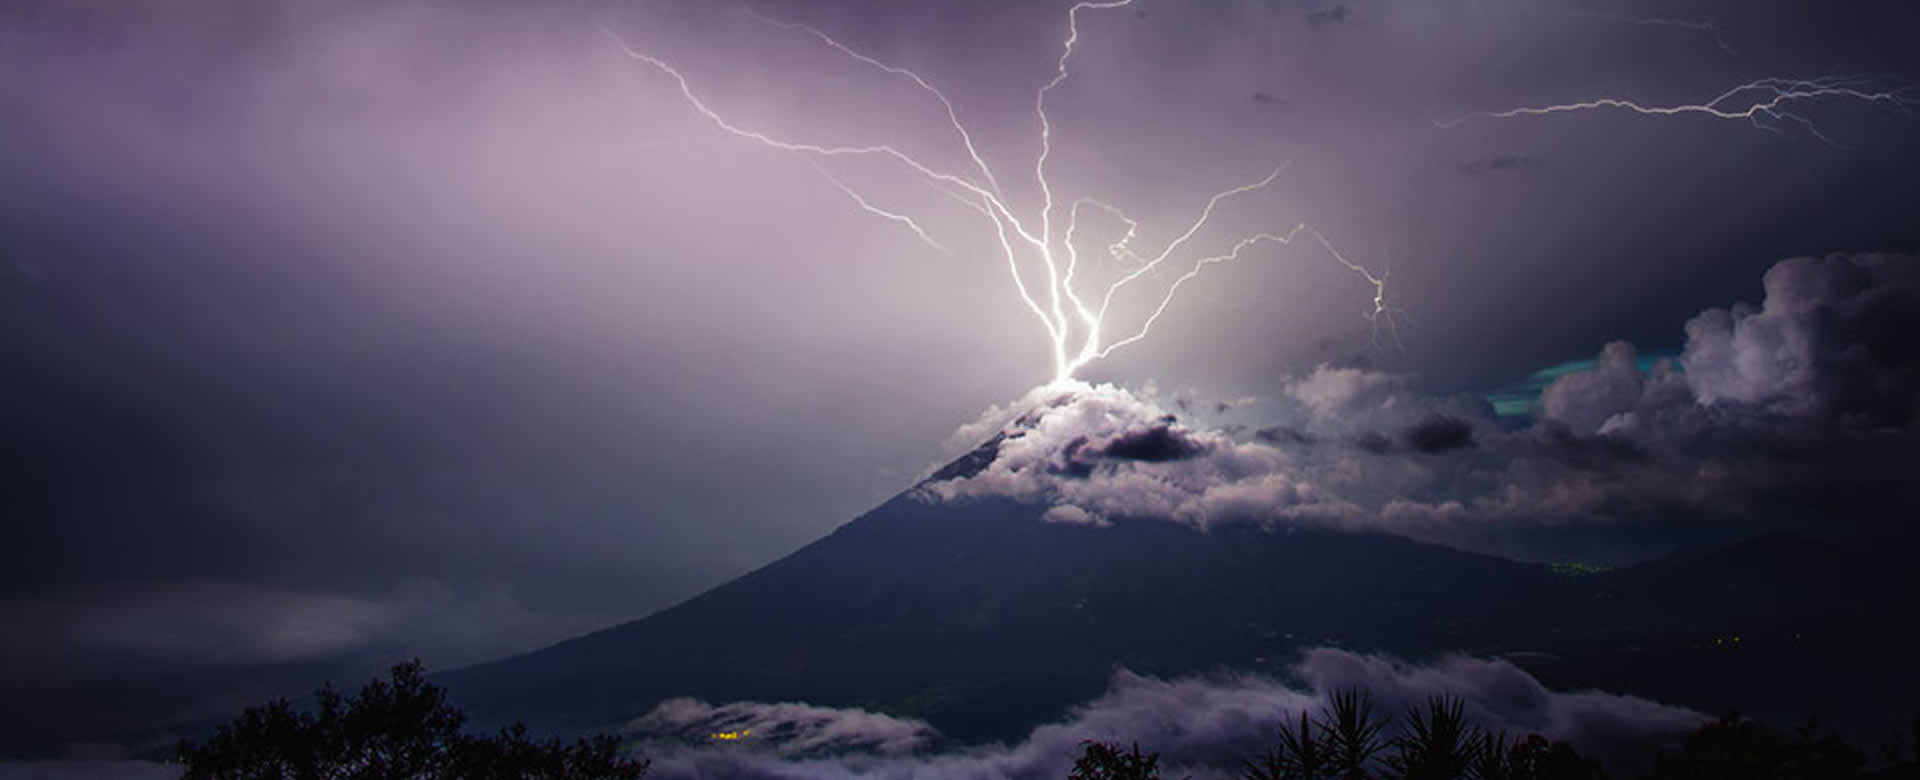 Impresionante tormenta eléctrica en la cima del volcán de Agua en Guatemala